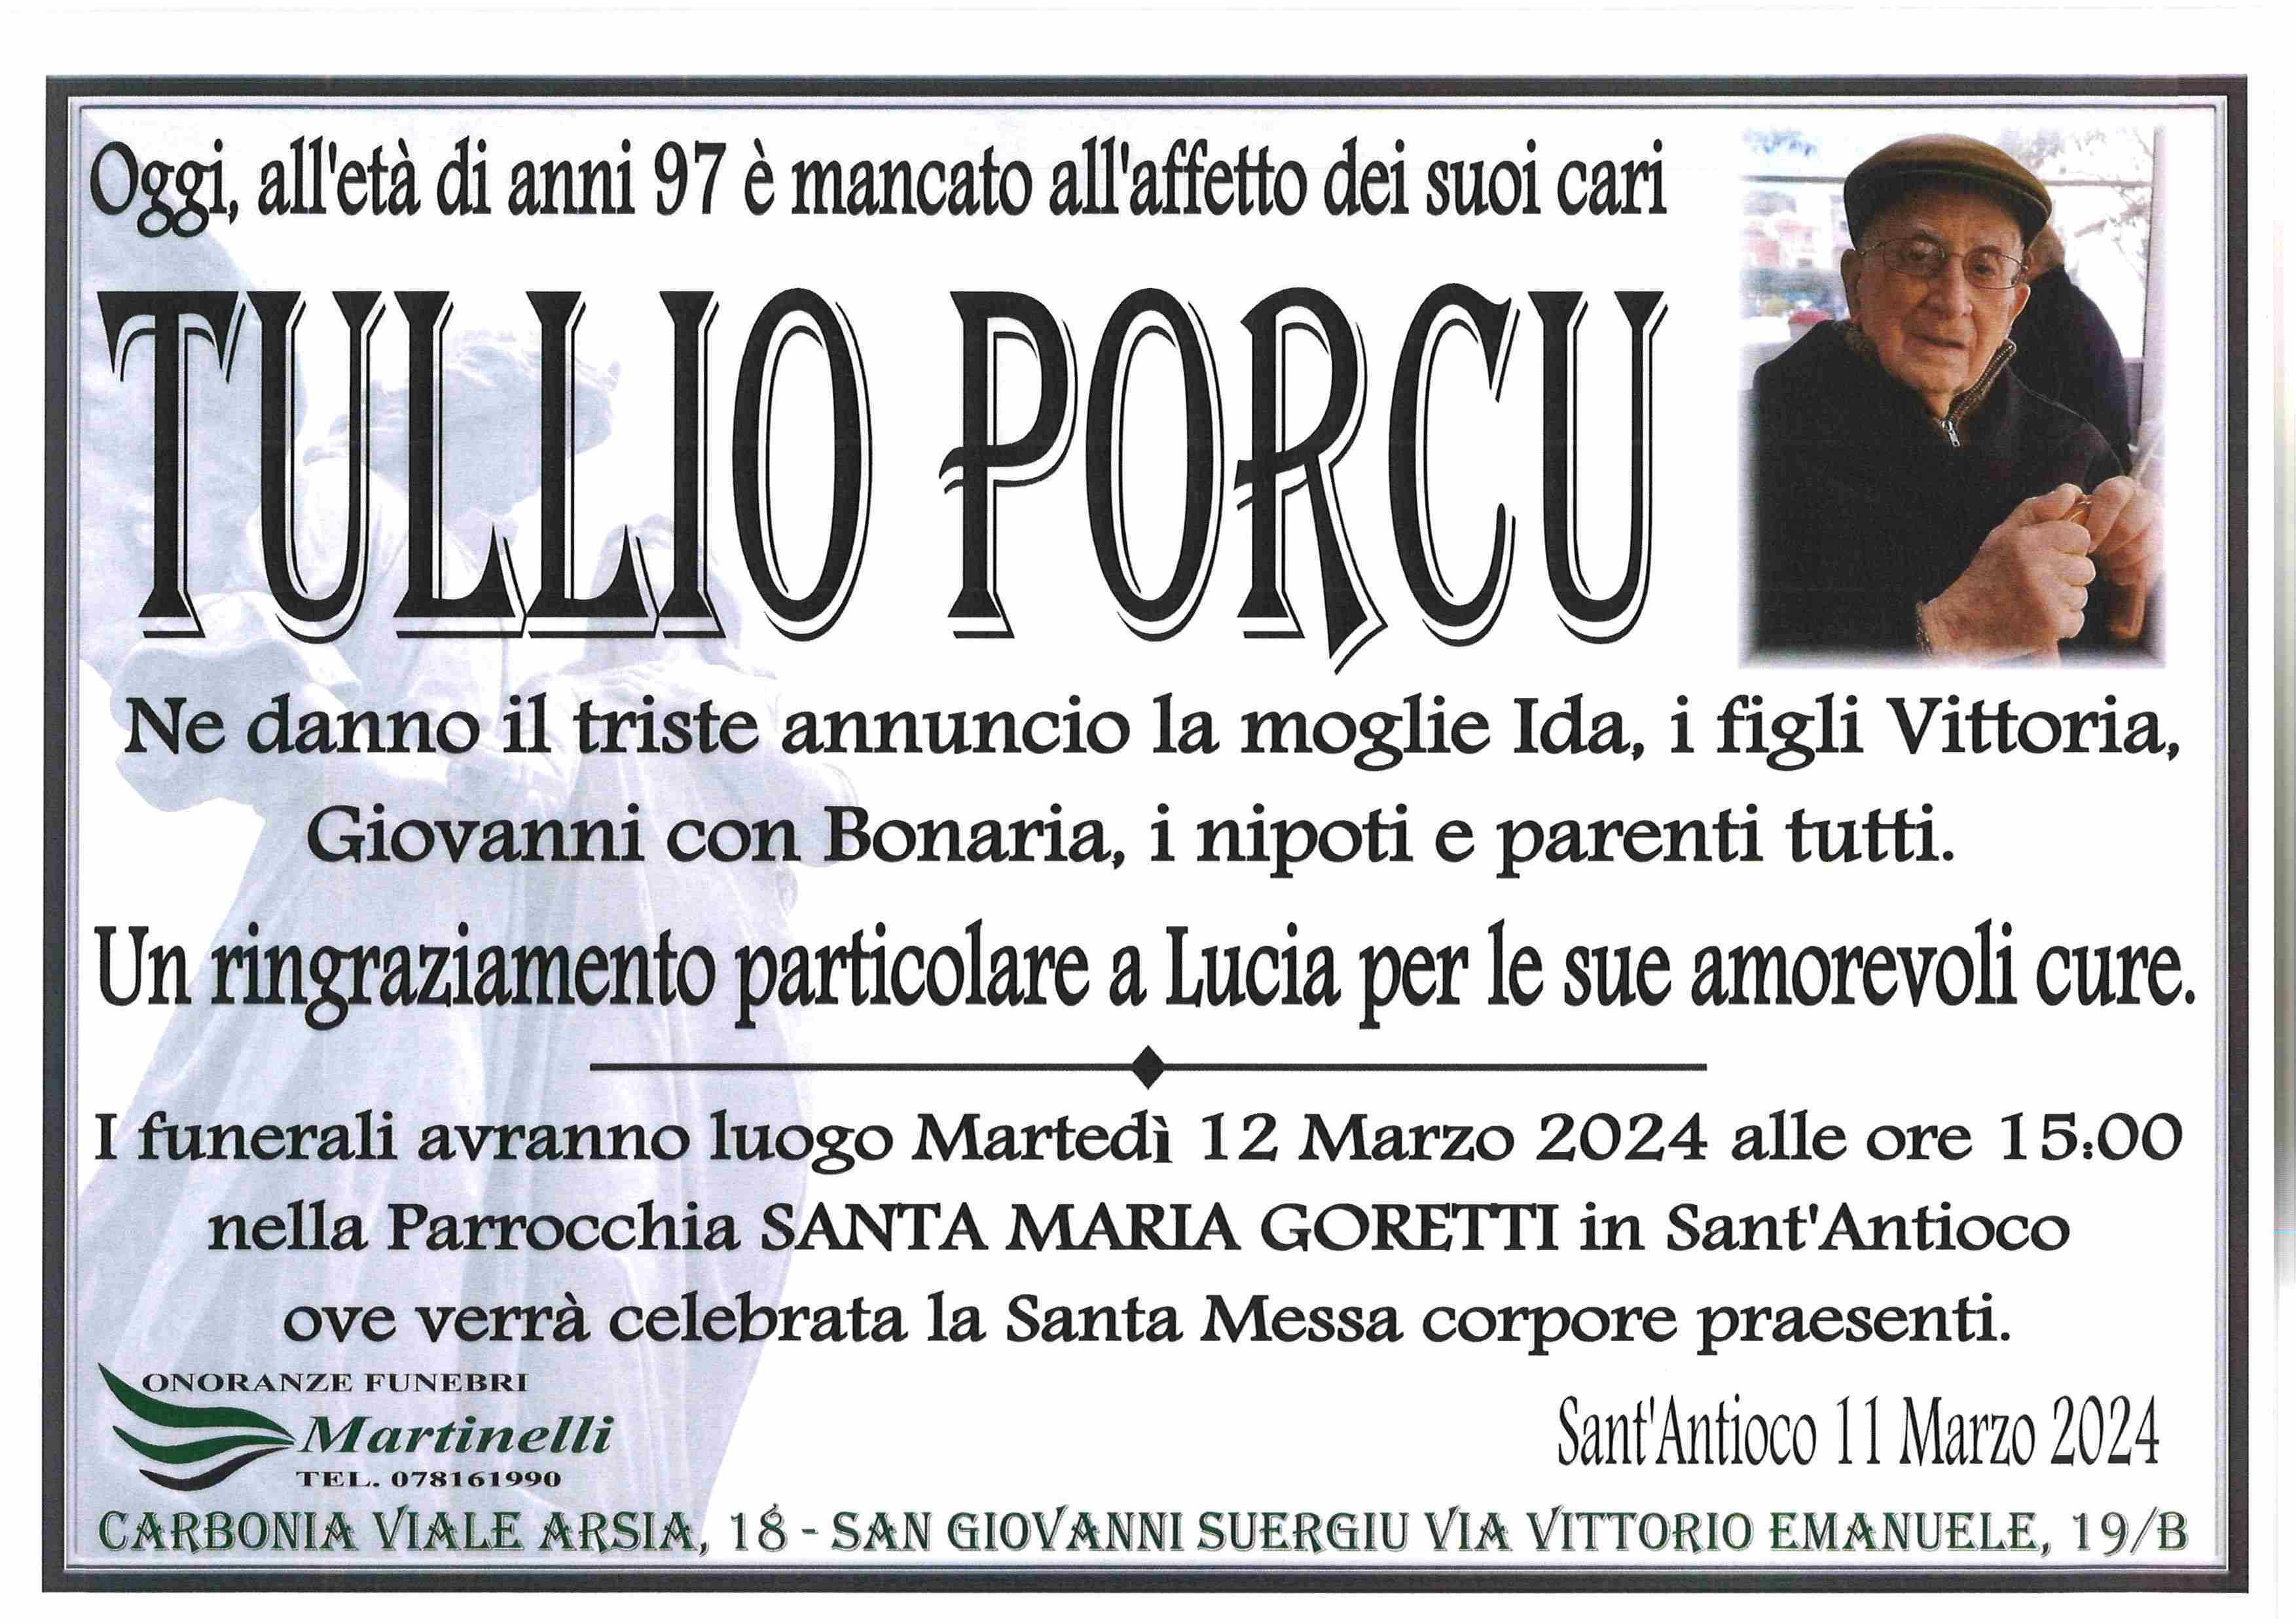 Tullio Porcu